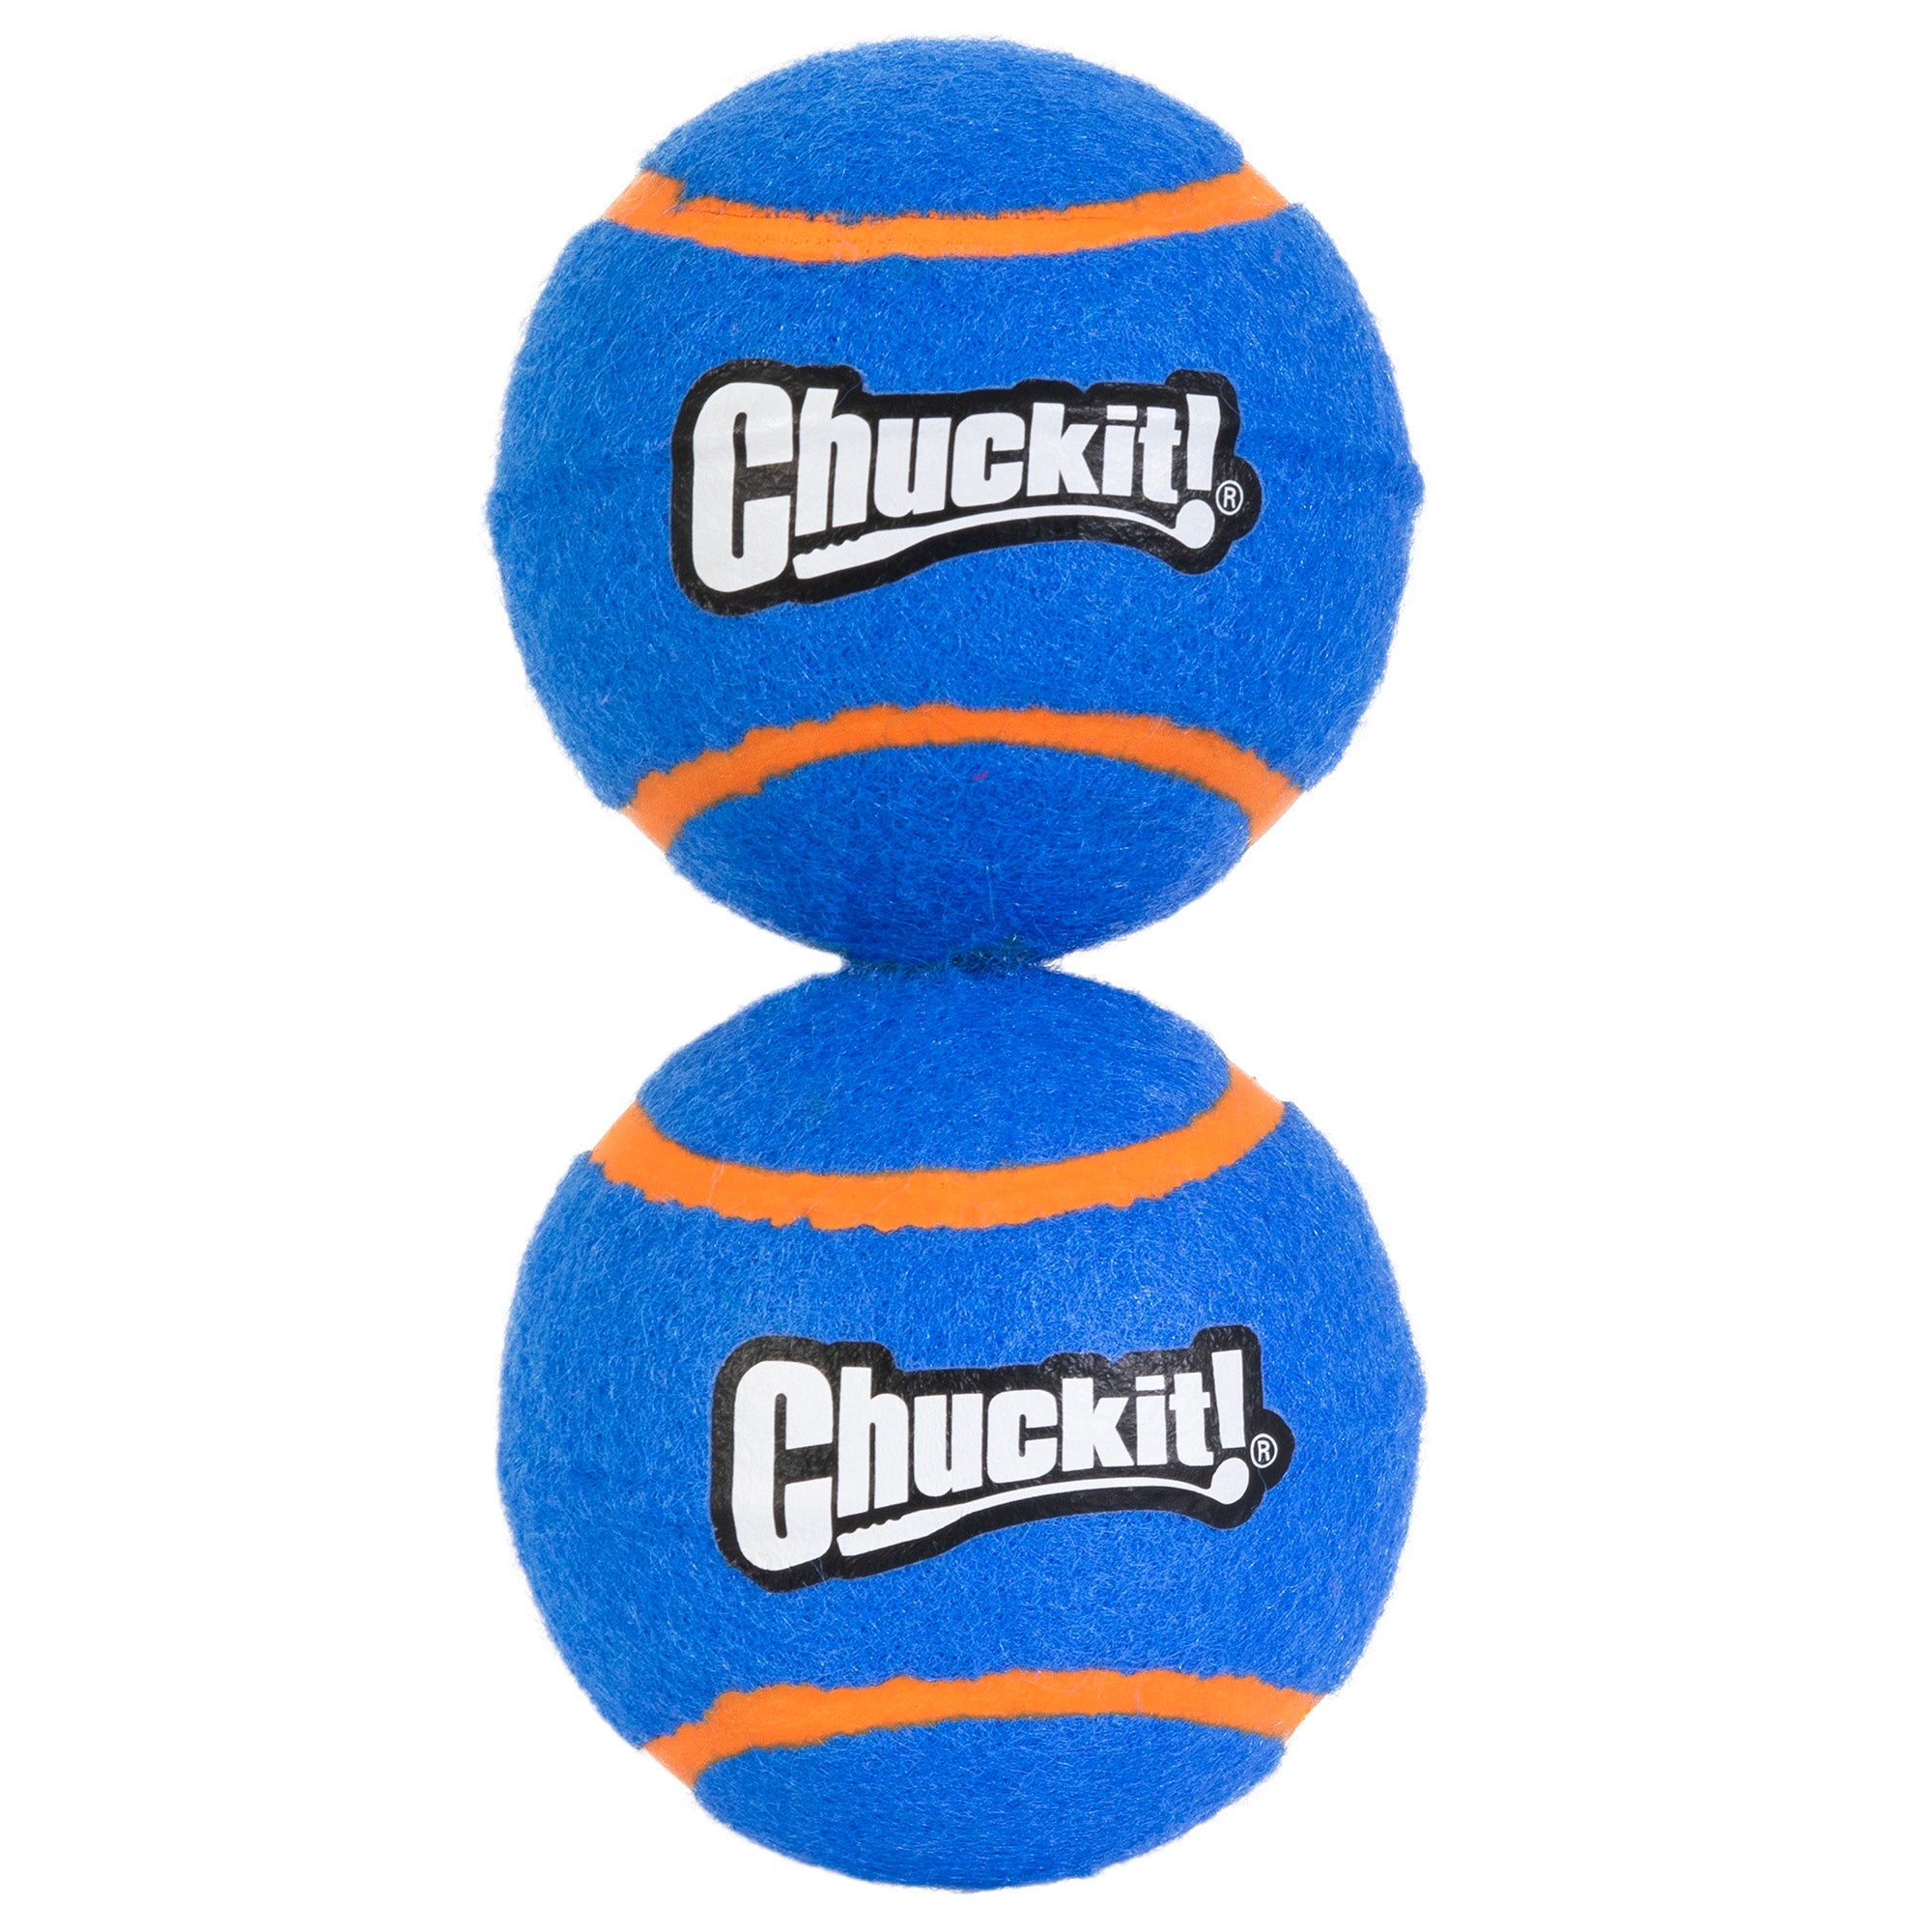 Chuckit! Squeaker Tennis Ball 2 Pack